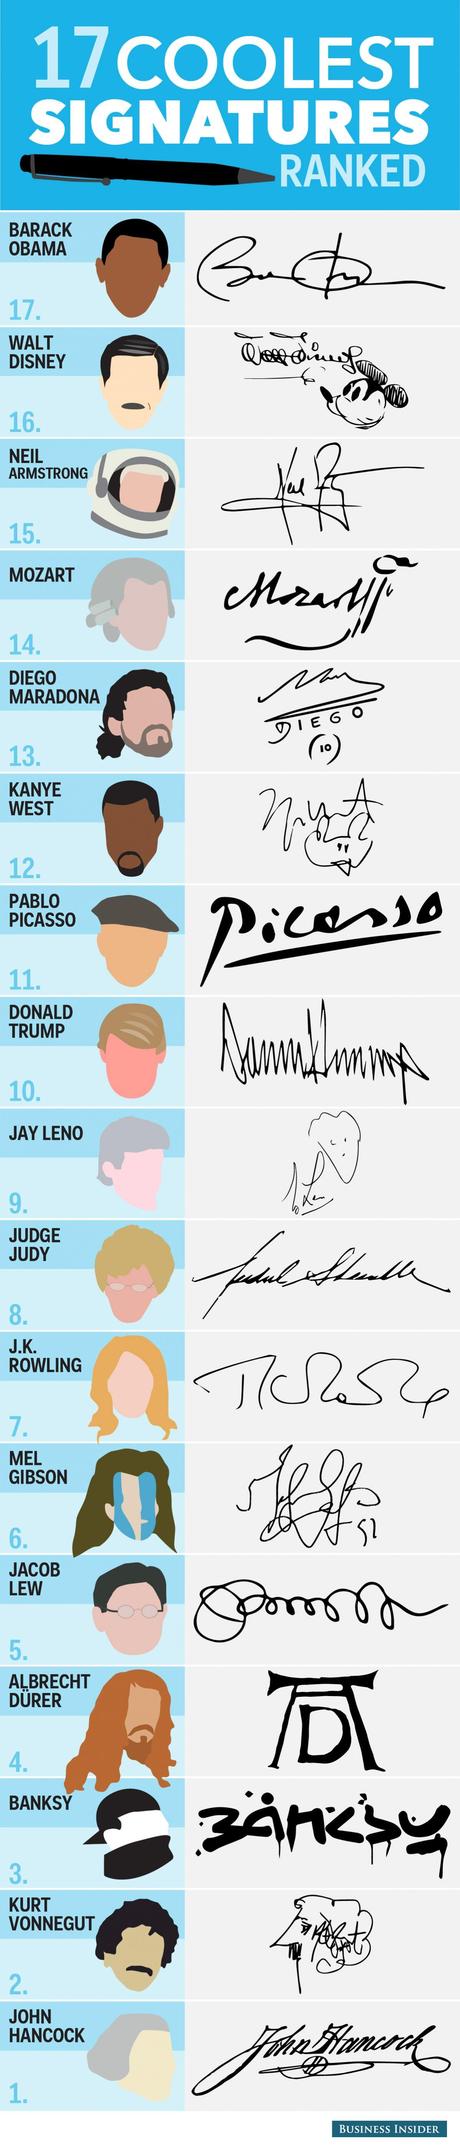 Les plus belles signatures de personnalités célèbres à travers l'histoire